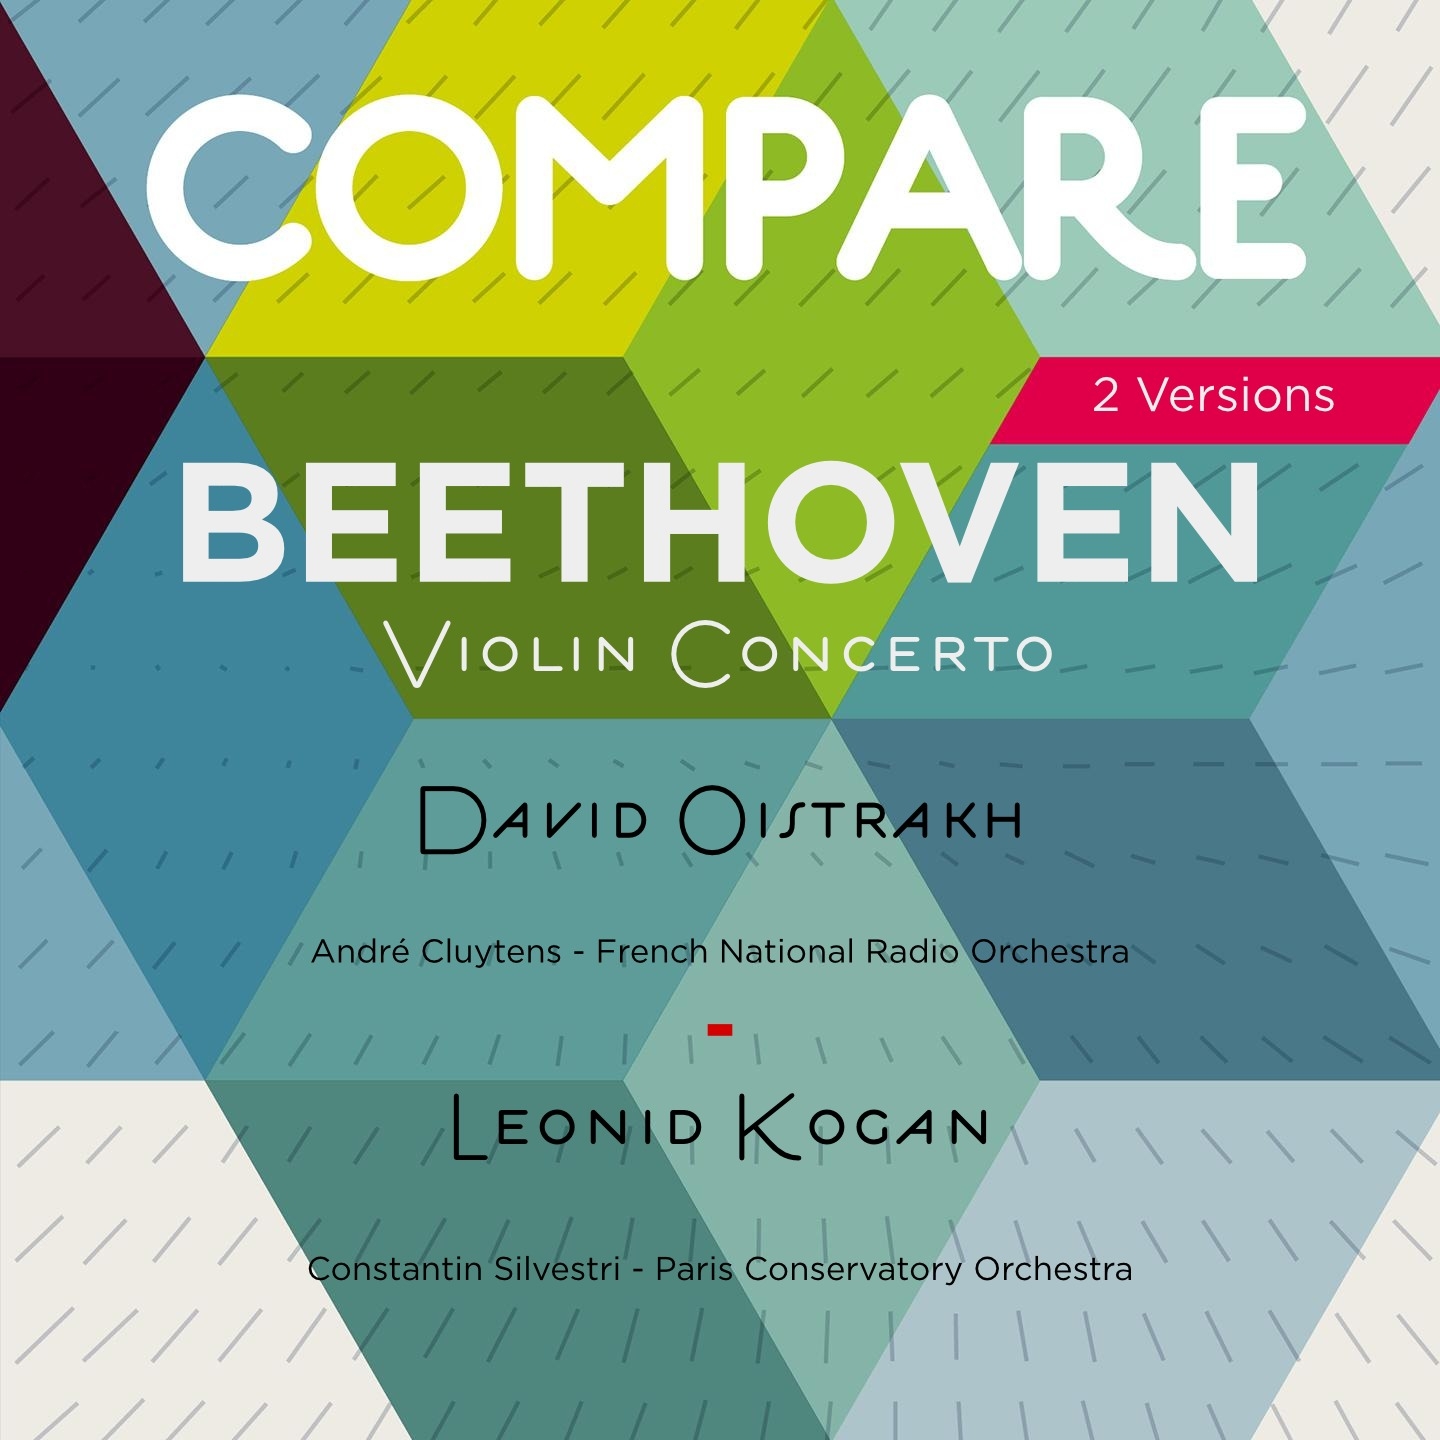 Concerto for Violin in D Major, Op. 61: I. Allegro ma non troppo